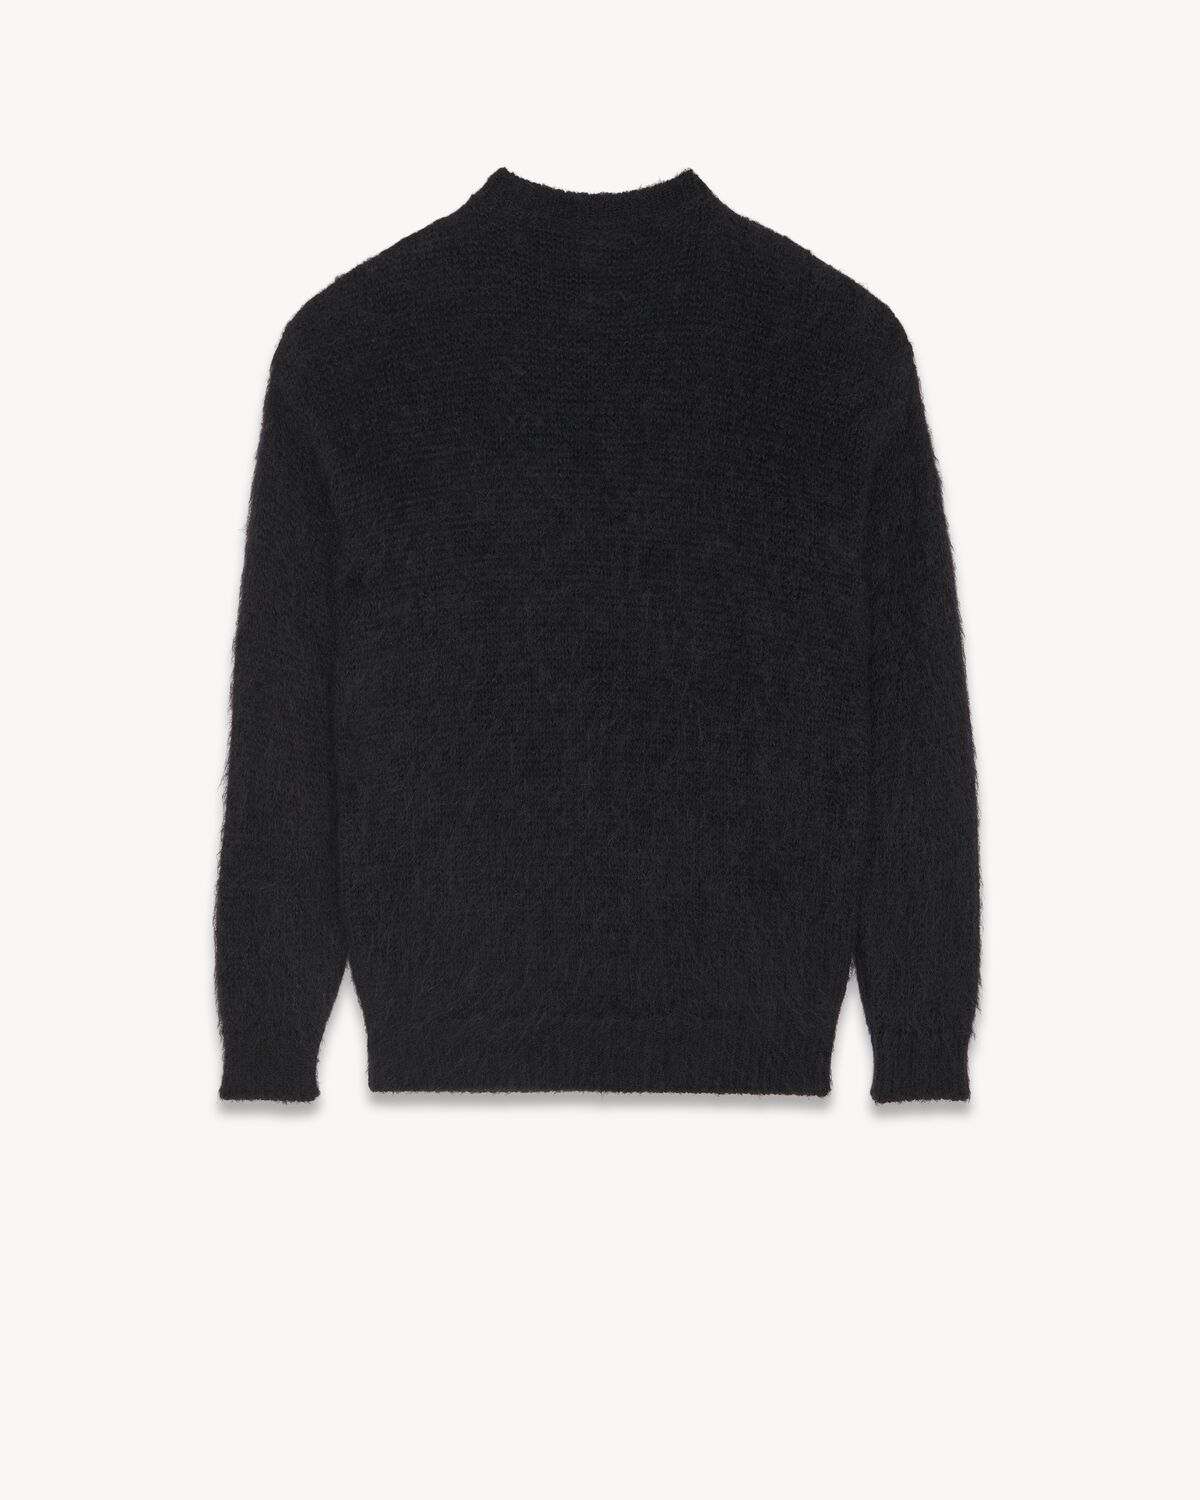 90s Saint Laurent sweater in mohair